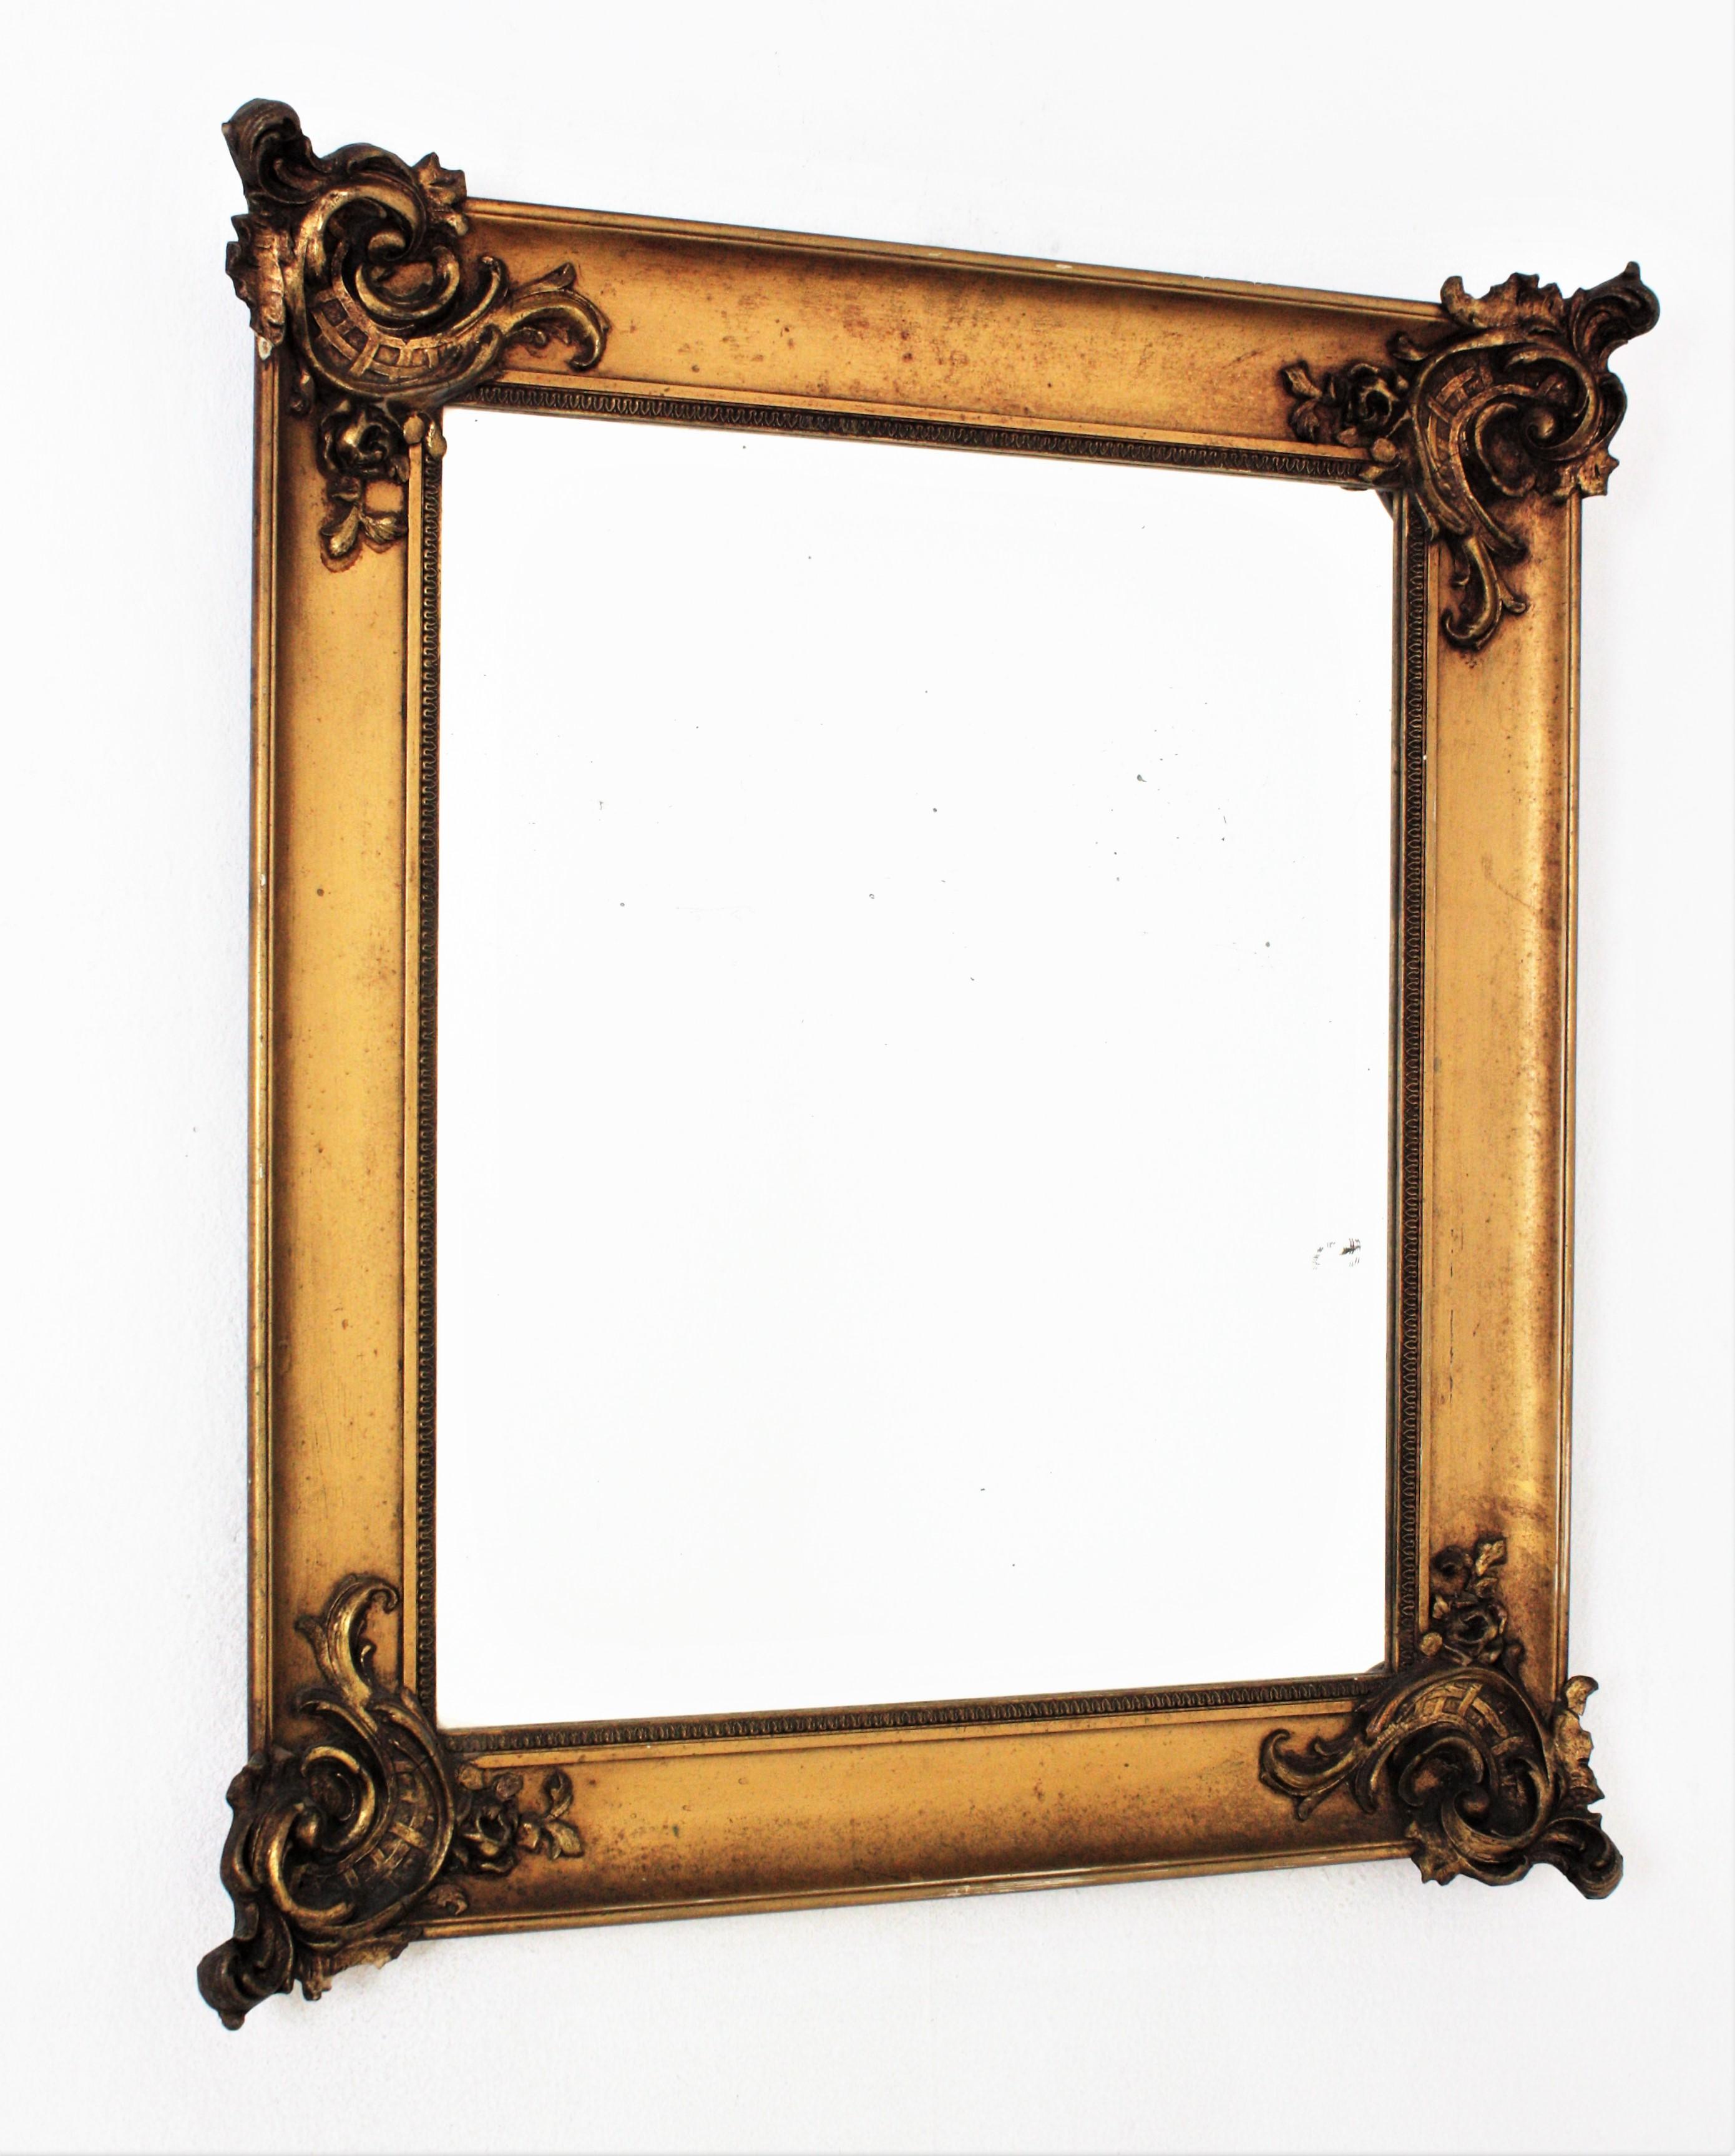 Miroir rectangulaire de style Louis XV, France, années 1930-1940.
Magnifique miroir mural doré à décor de feuillages aux angles, de style Louis XV
Mesures : 80 cm H x 69 cm L x 9 cm P
Dimensions du verre : 57,5 cm H x 47,5 cm L

Nous sommes